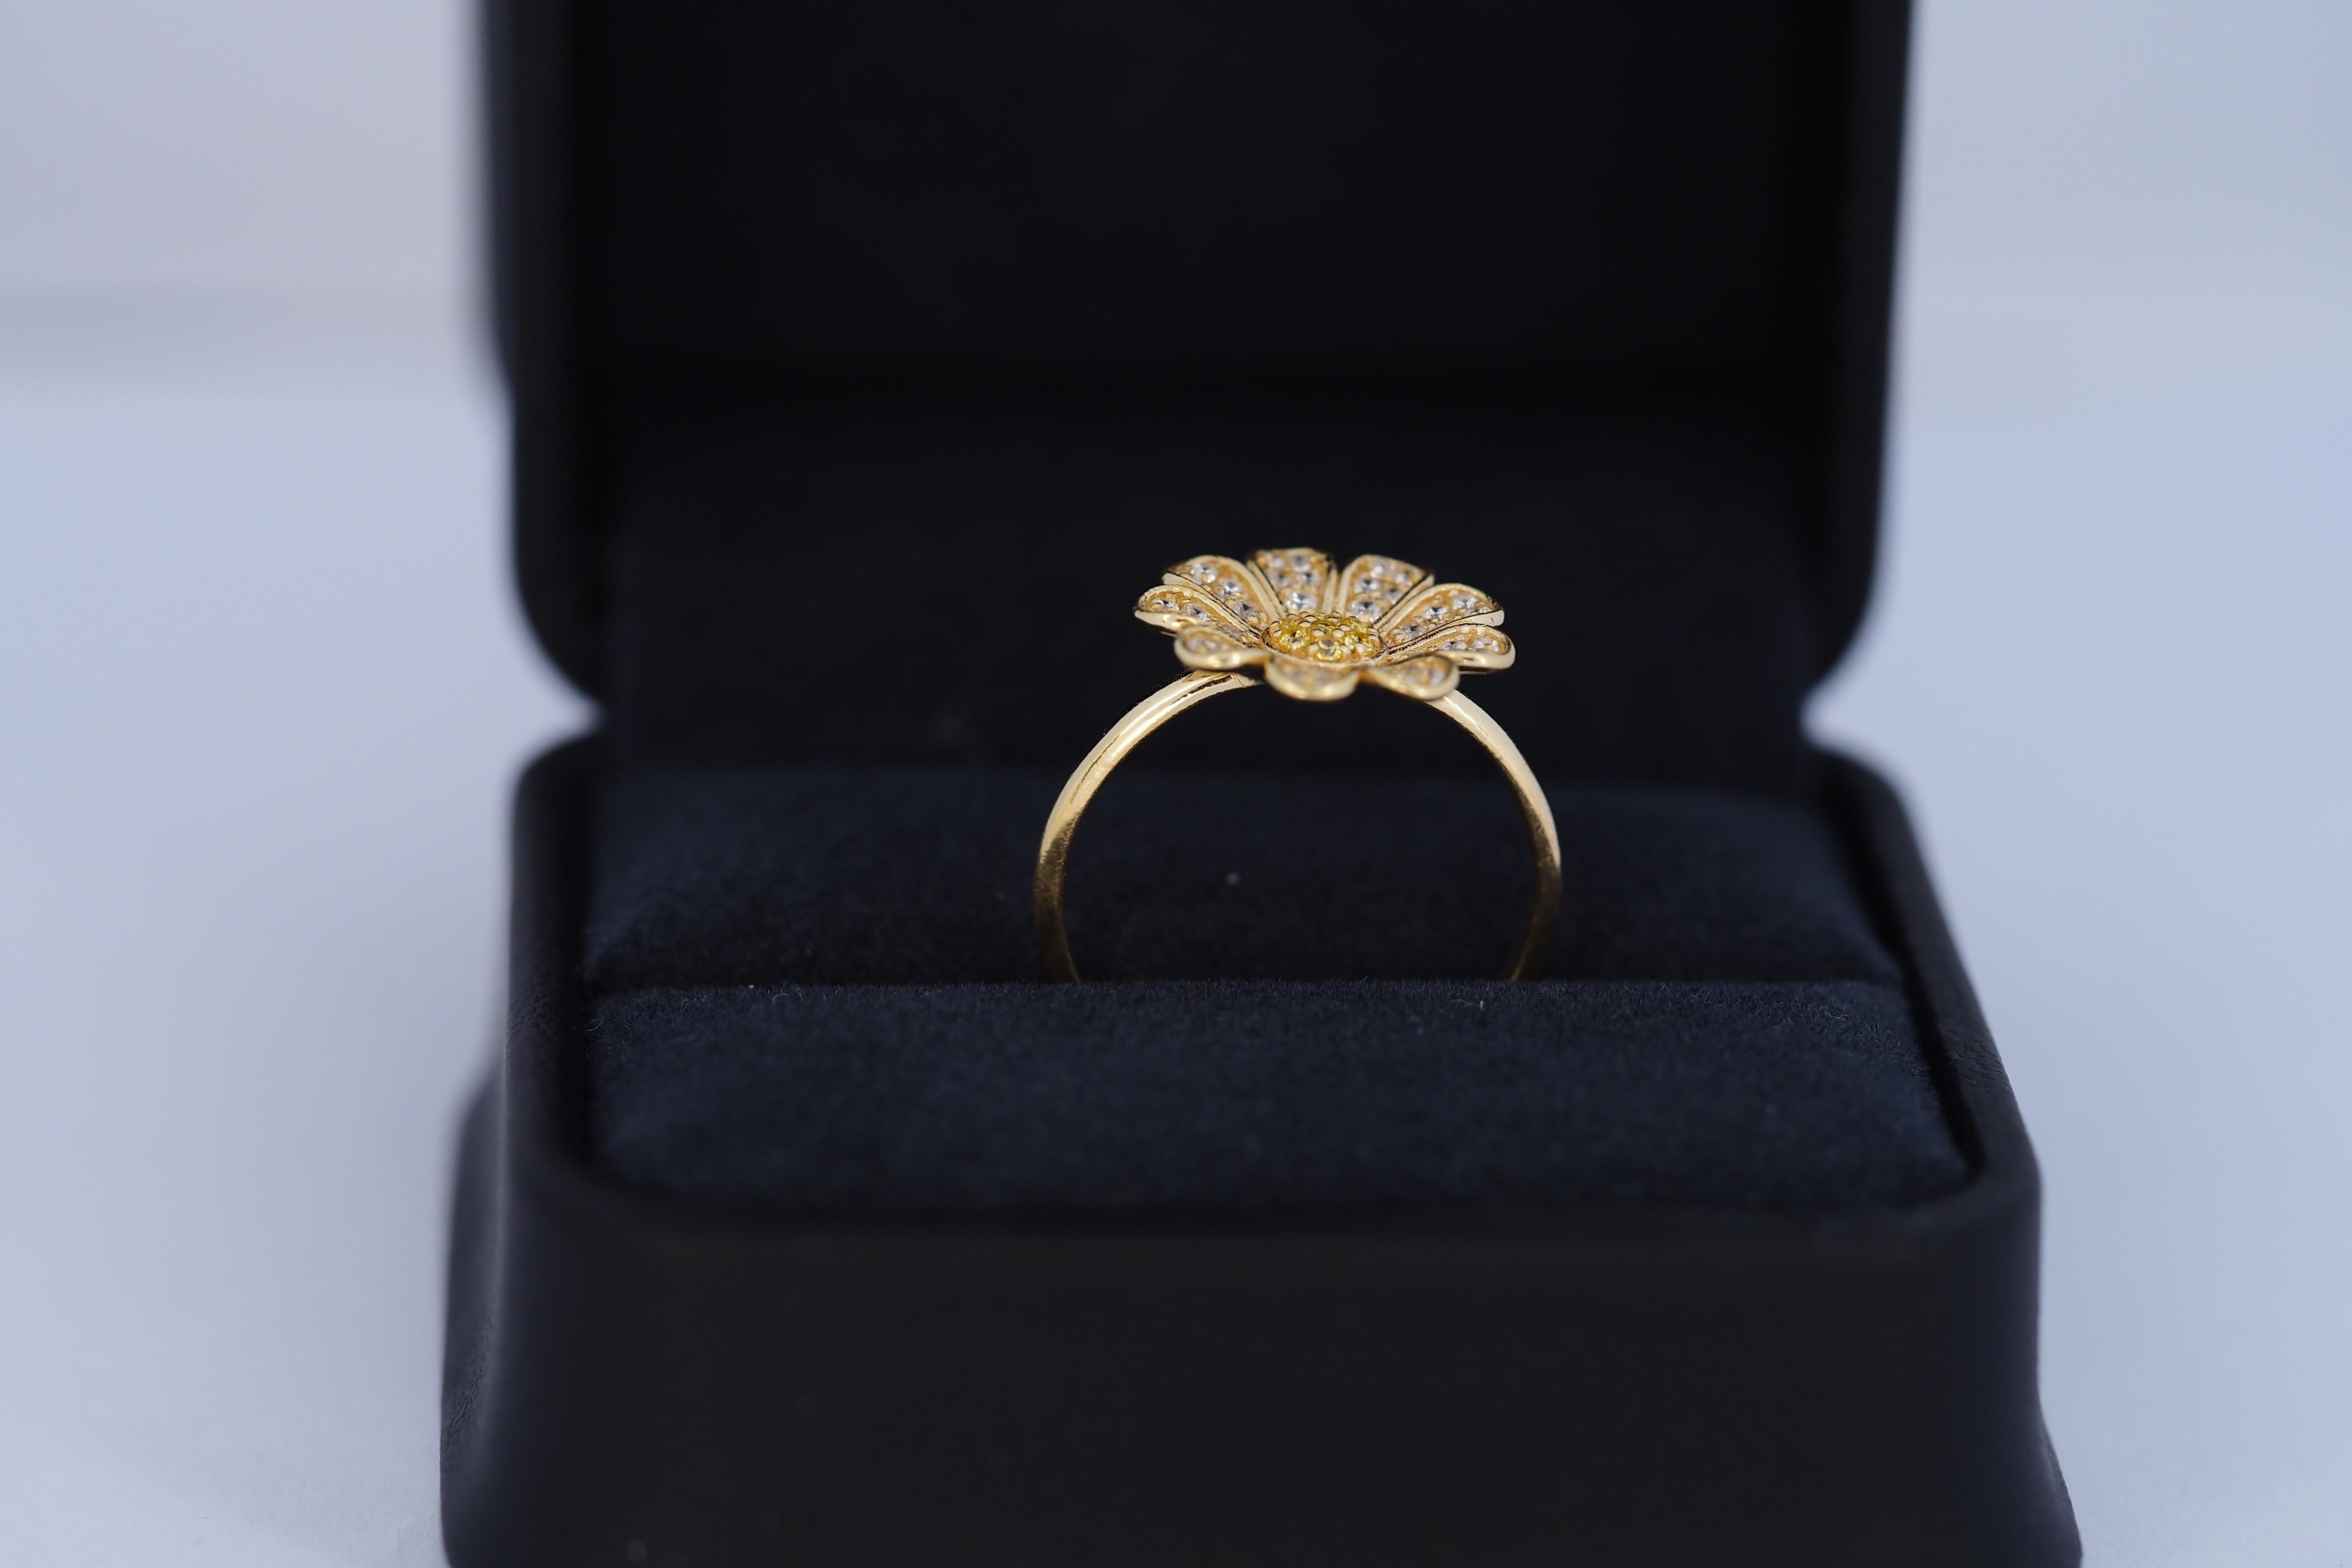 For Sale:  Daisy flower 14k gold ring.  3